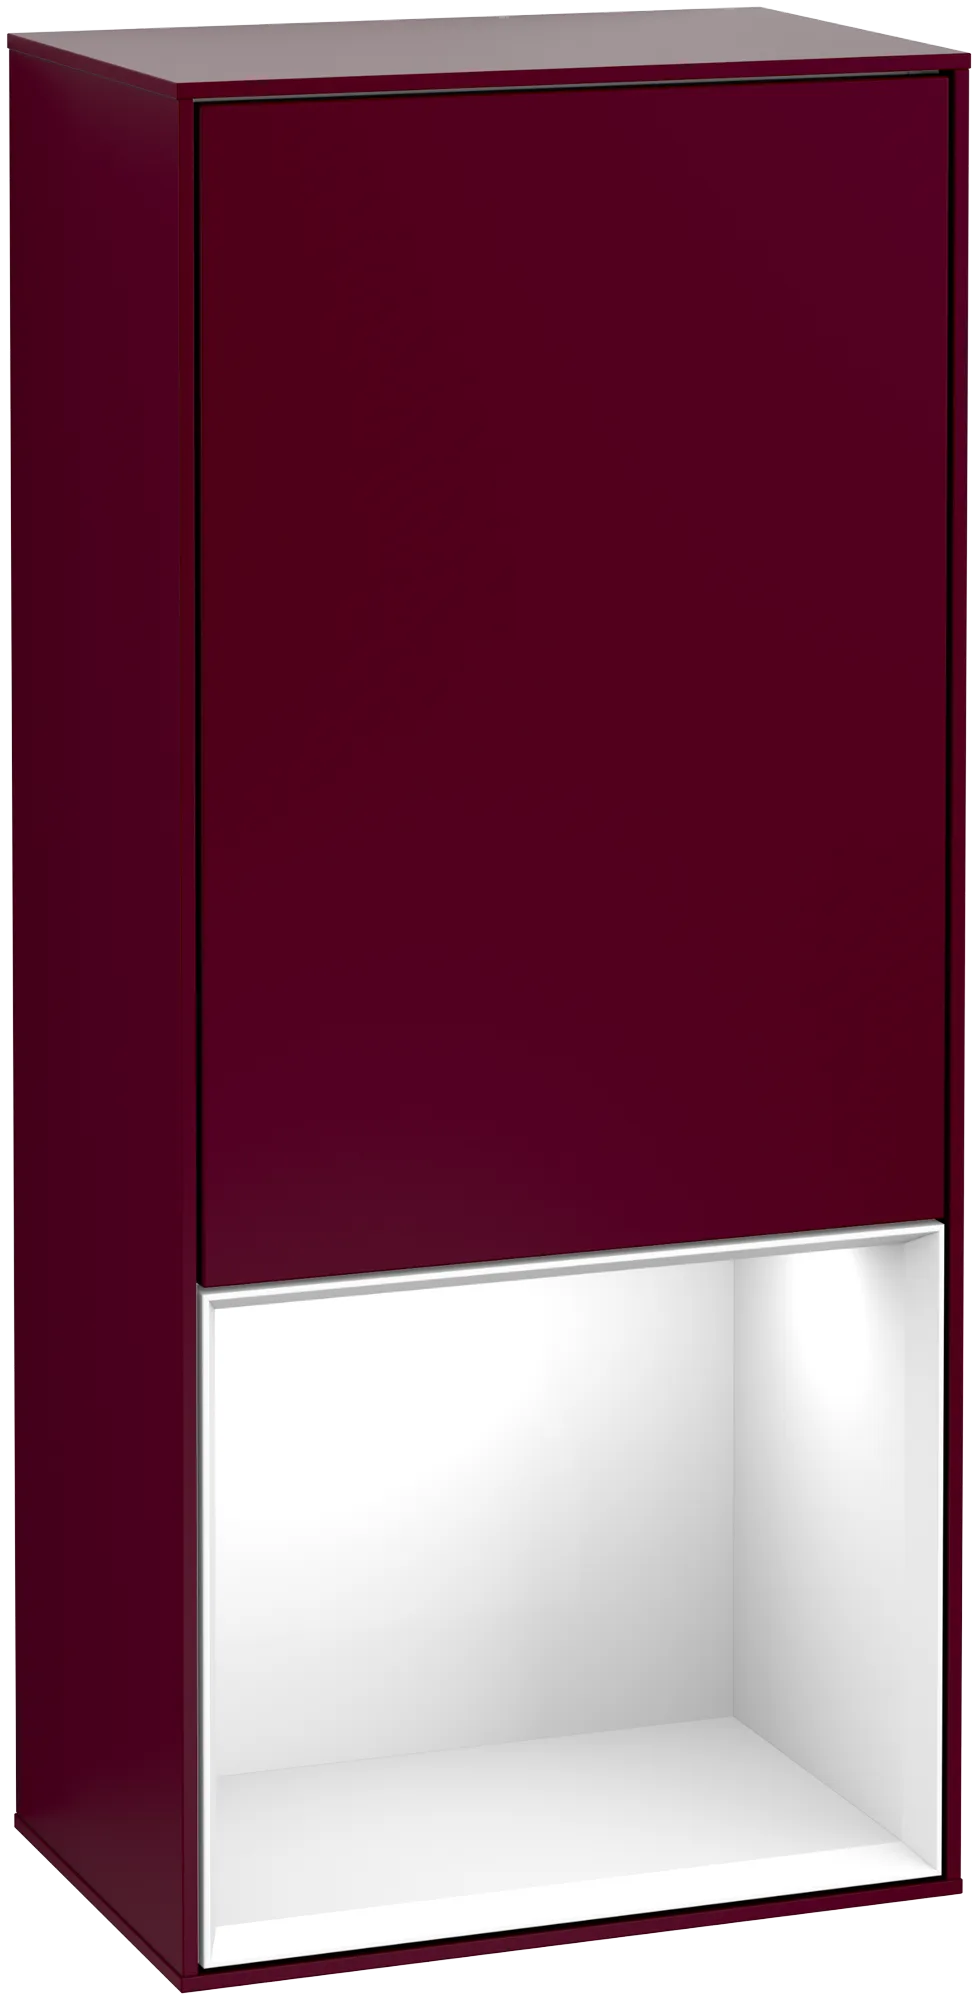 Bild von VILLEROY BOCH Finion Seitenschrank, mit Beleuchtung, 1 Tür, 418 x 936 x 270 mm, Peony Matt Lacquer / Glossy White Lacquer #G550GFHB